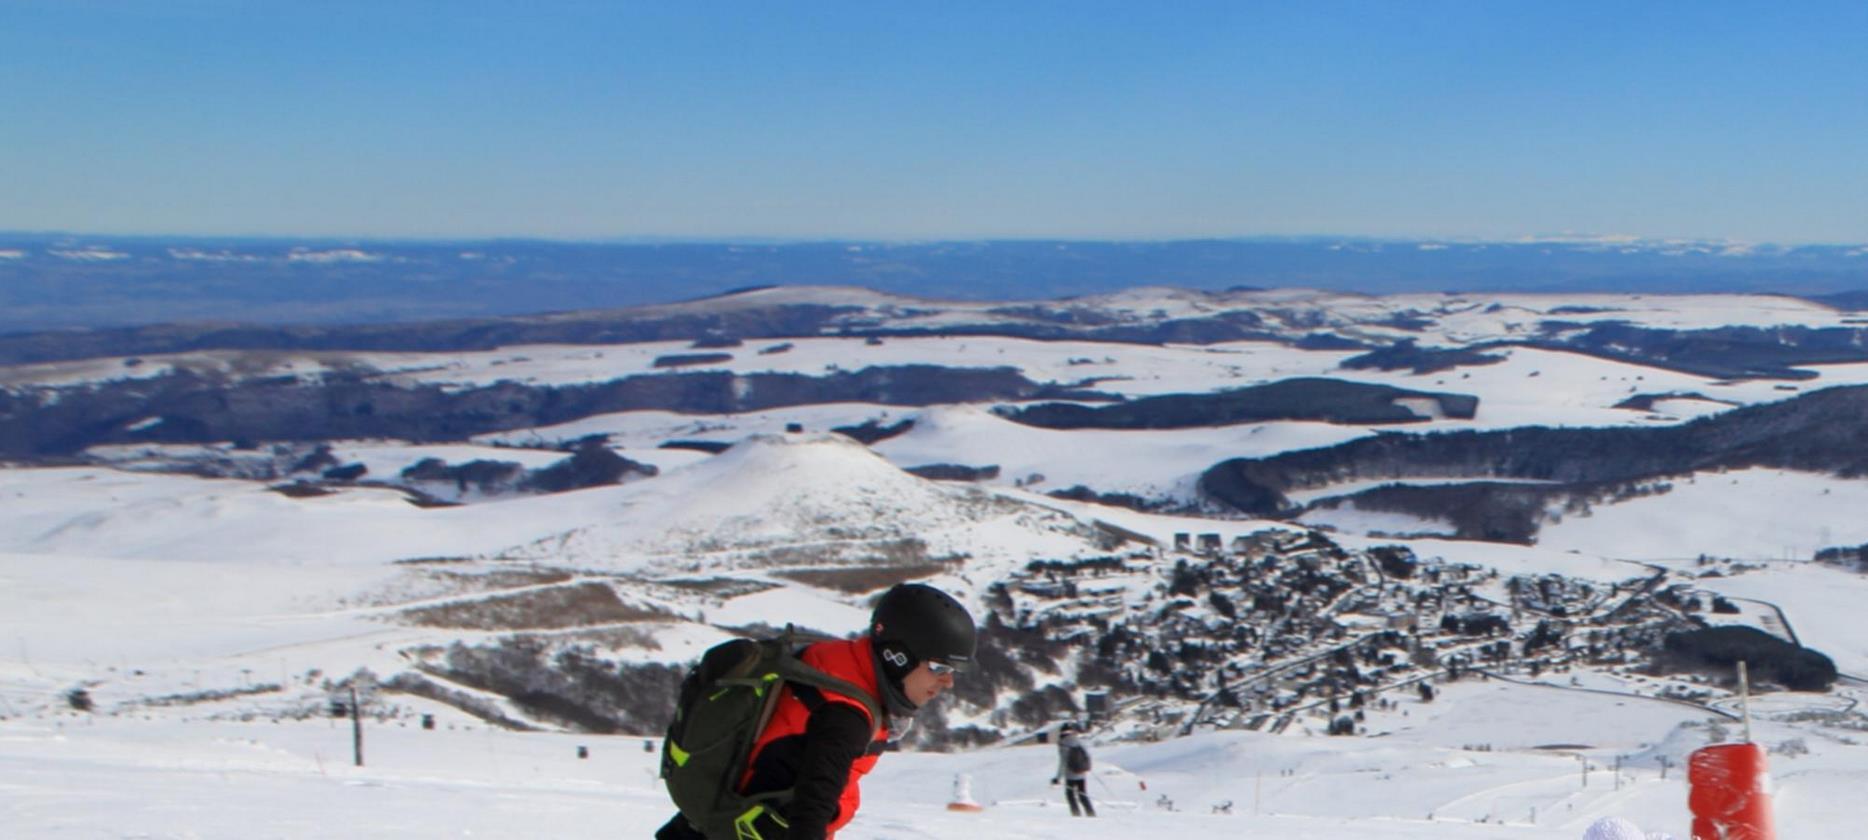 Super besse - magnifique vue sur la station de ski sous la neige